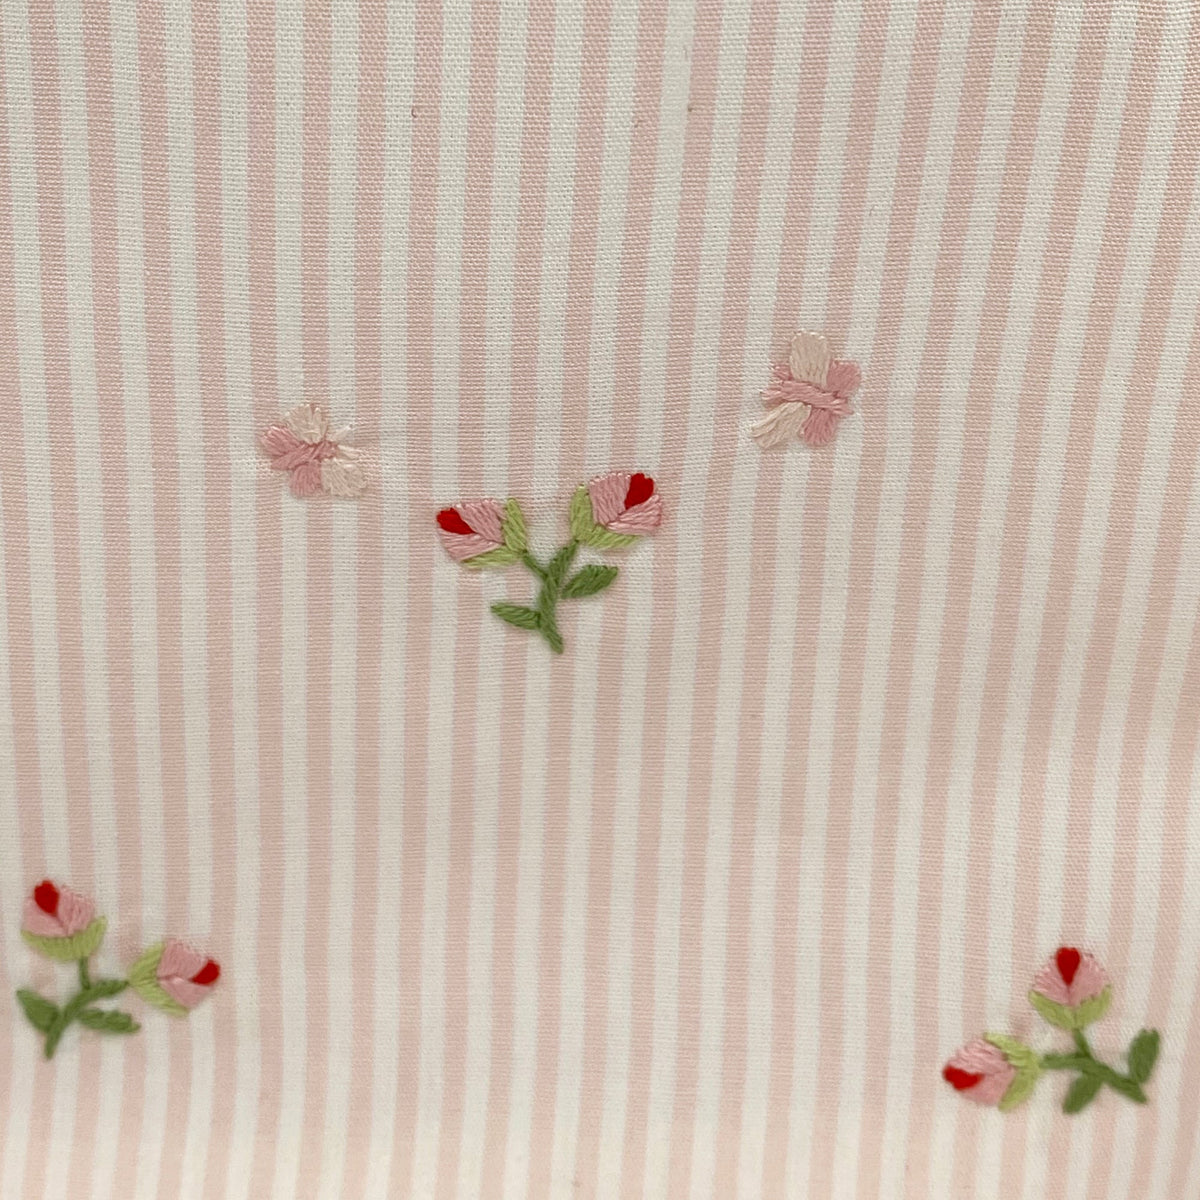 baby rosebud detail on tissue box cover